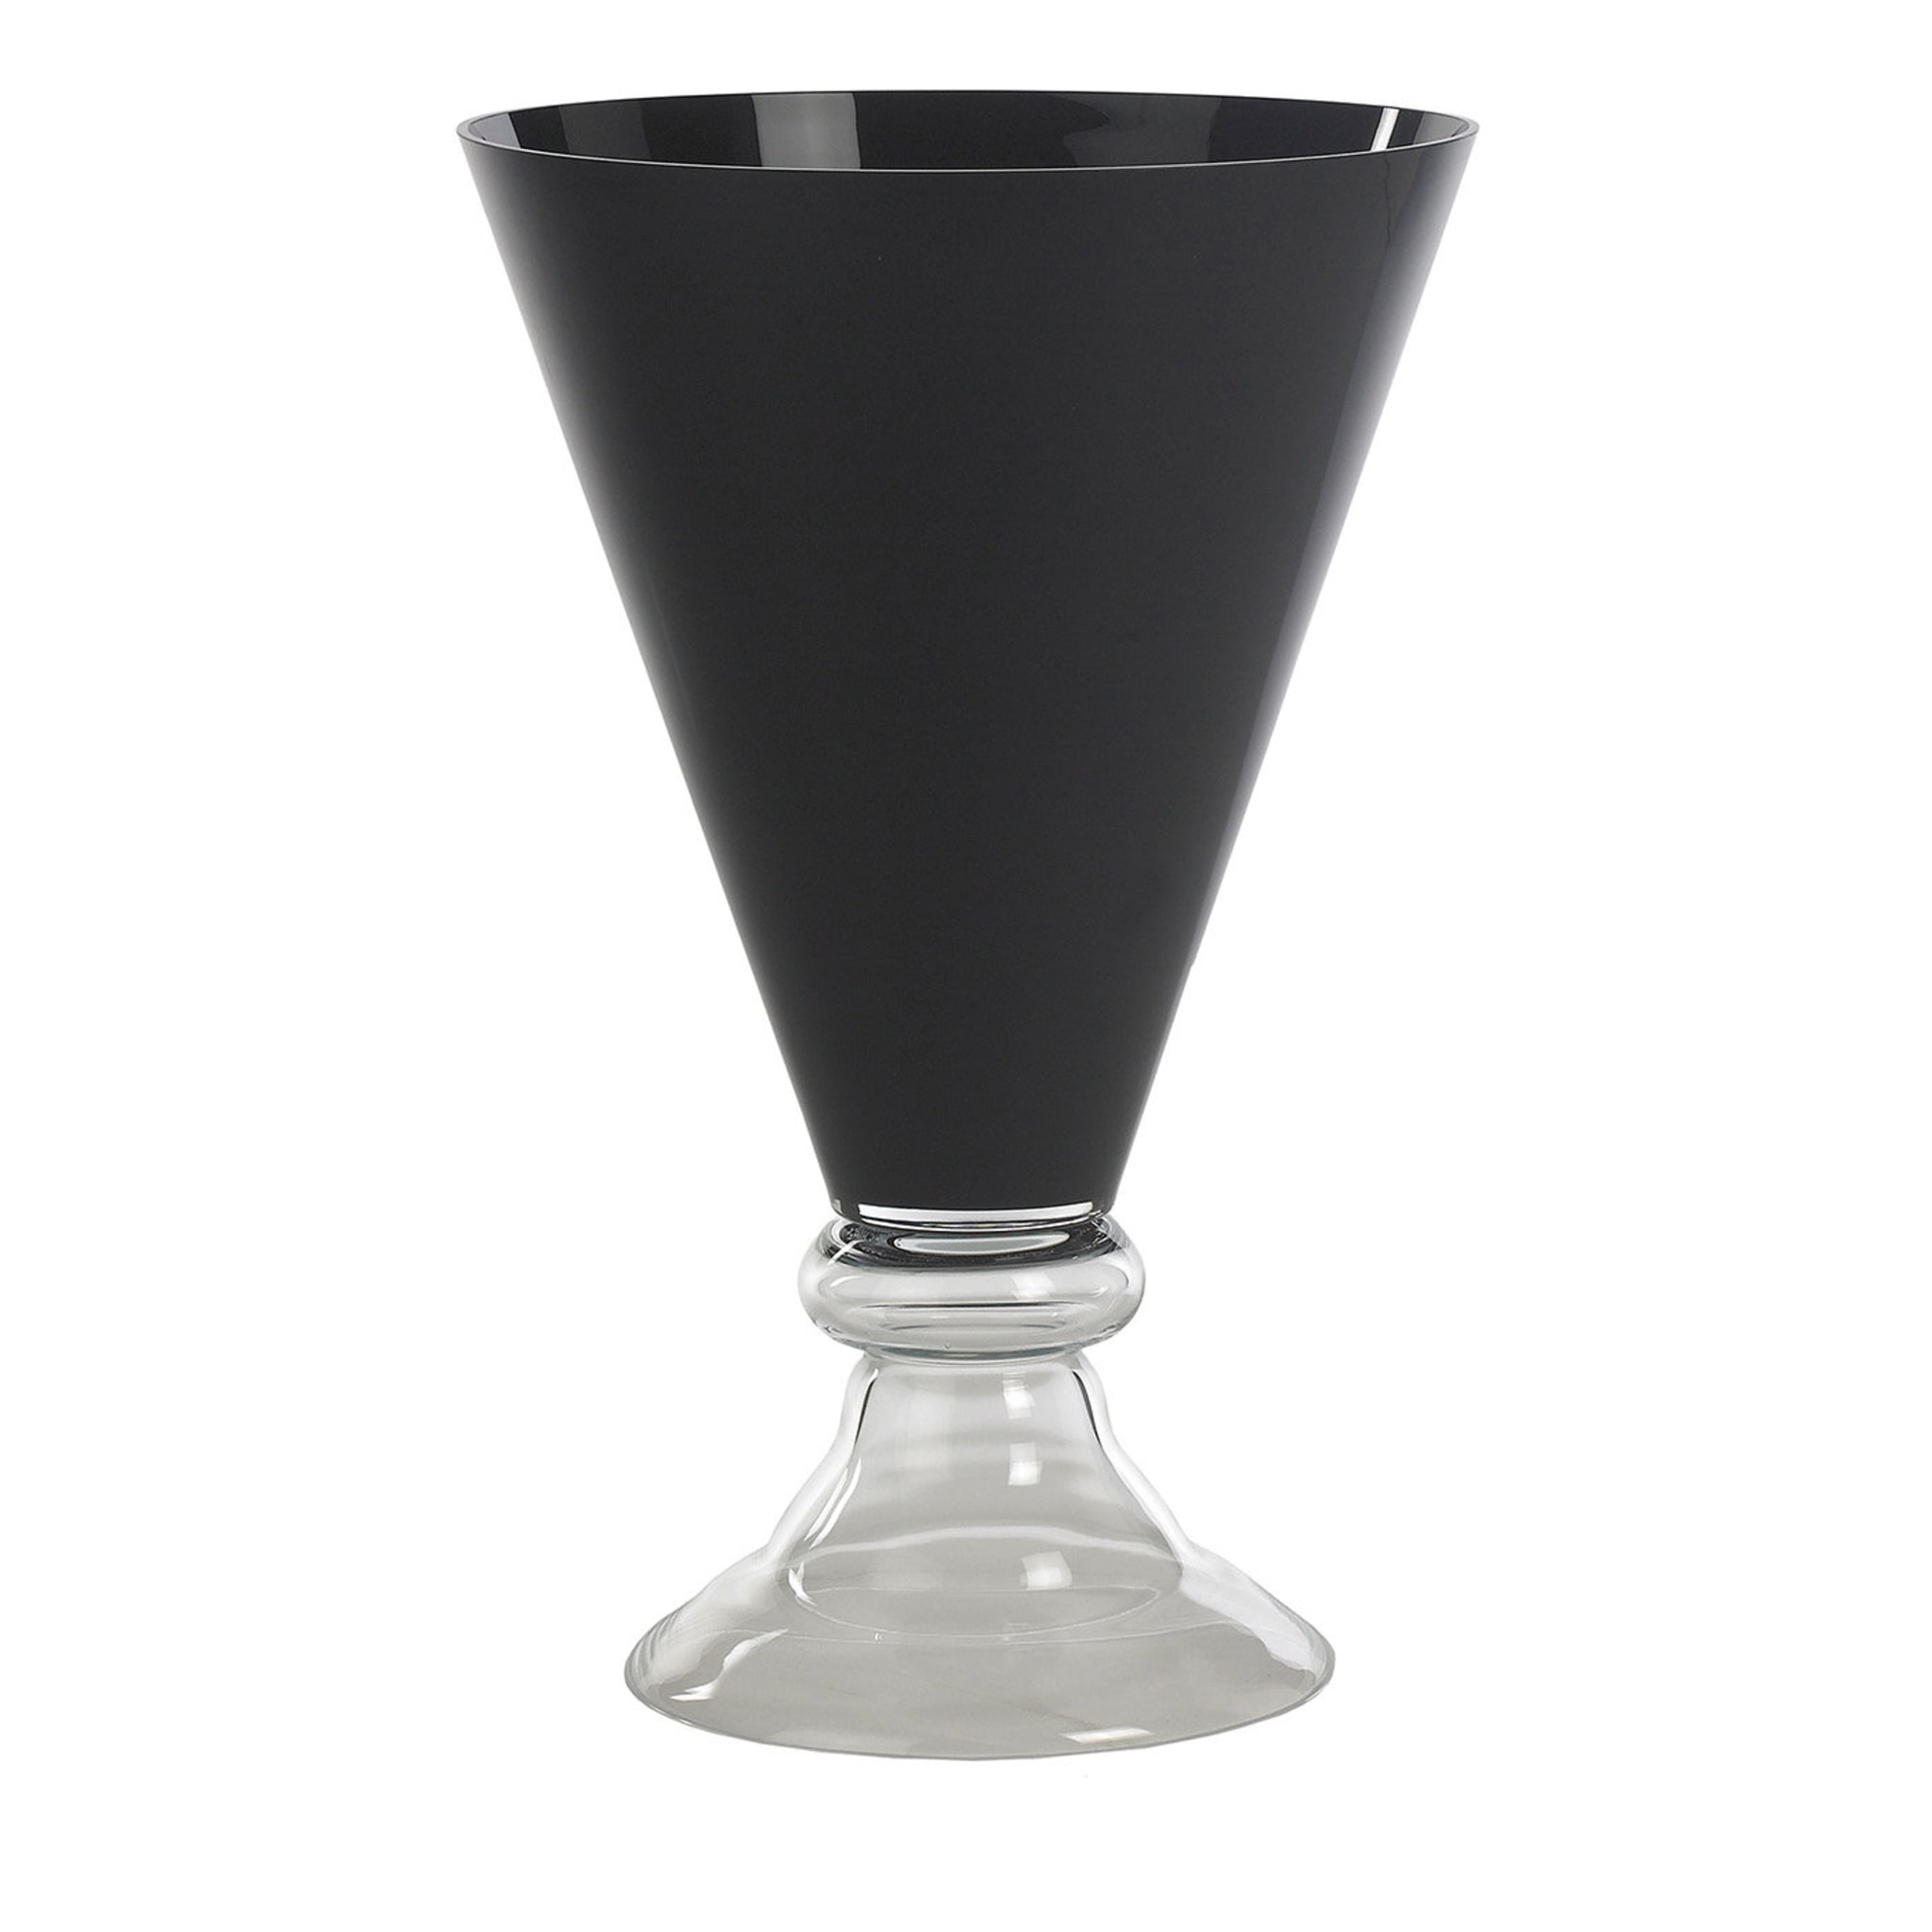 Nouveau vase romantique noir - Vue principale